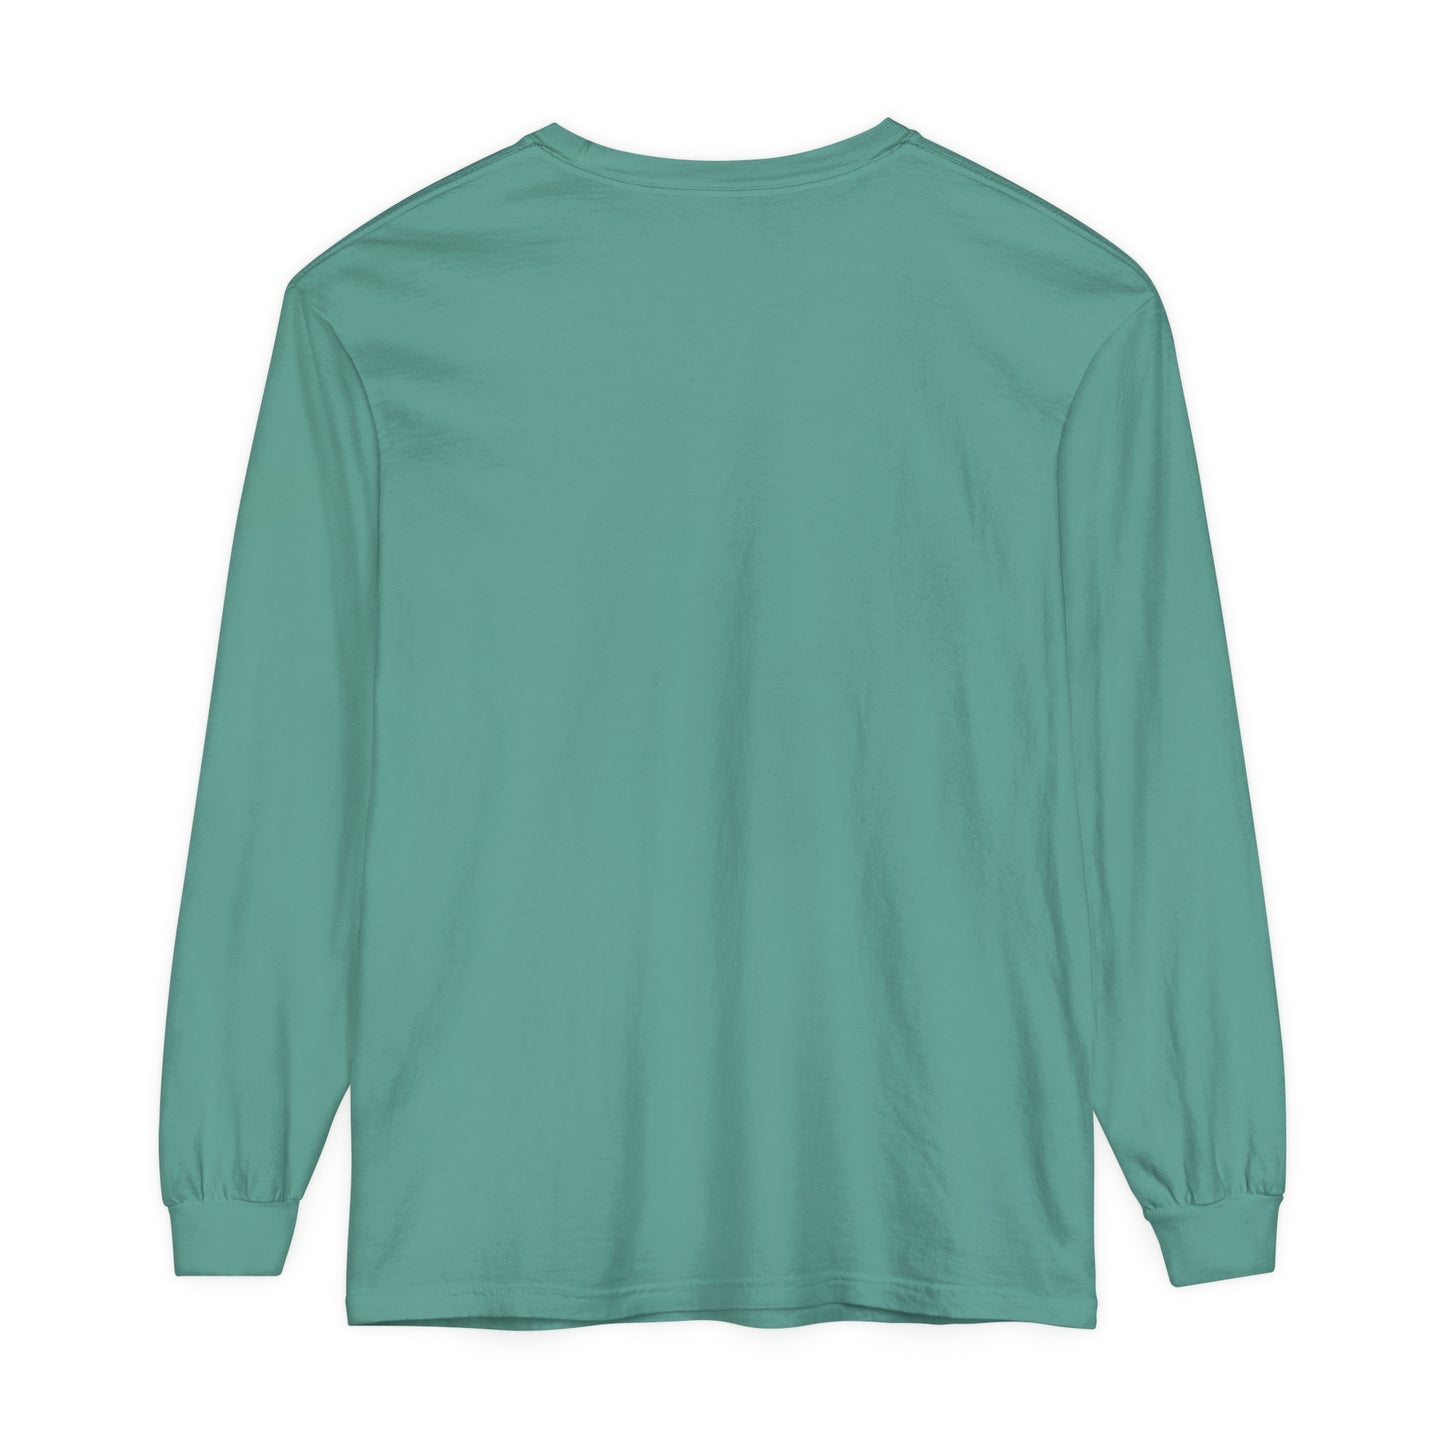 Mint long sleeve shirt with Logo in the left chest• მენთოლის ფერი გრძელმკლავიანი მაისური მარცხნივ ლოგოთი (UNISEX)